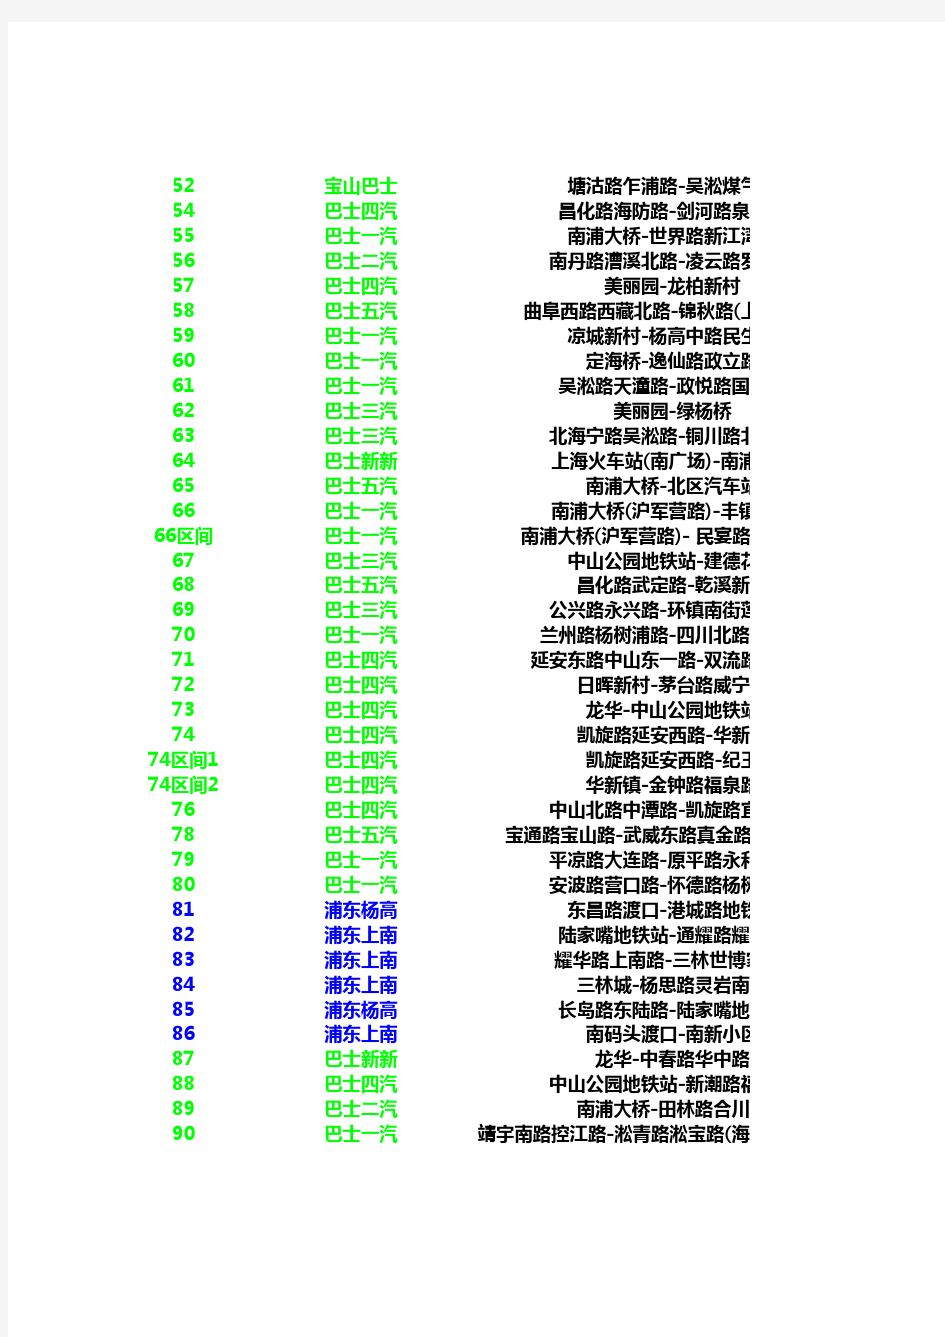 上海公交线路一览表(截止2012年12月)